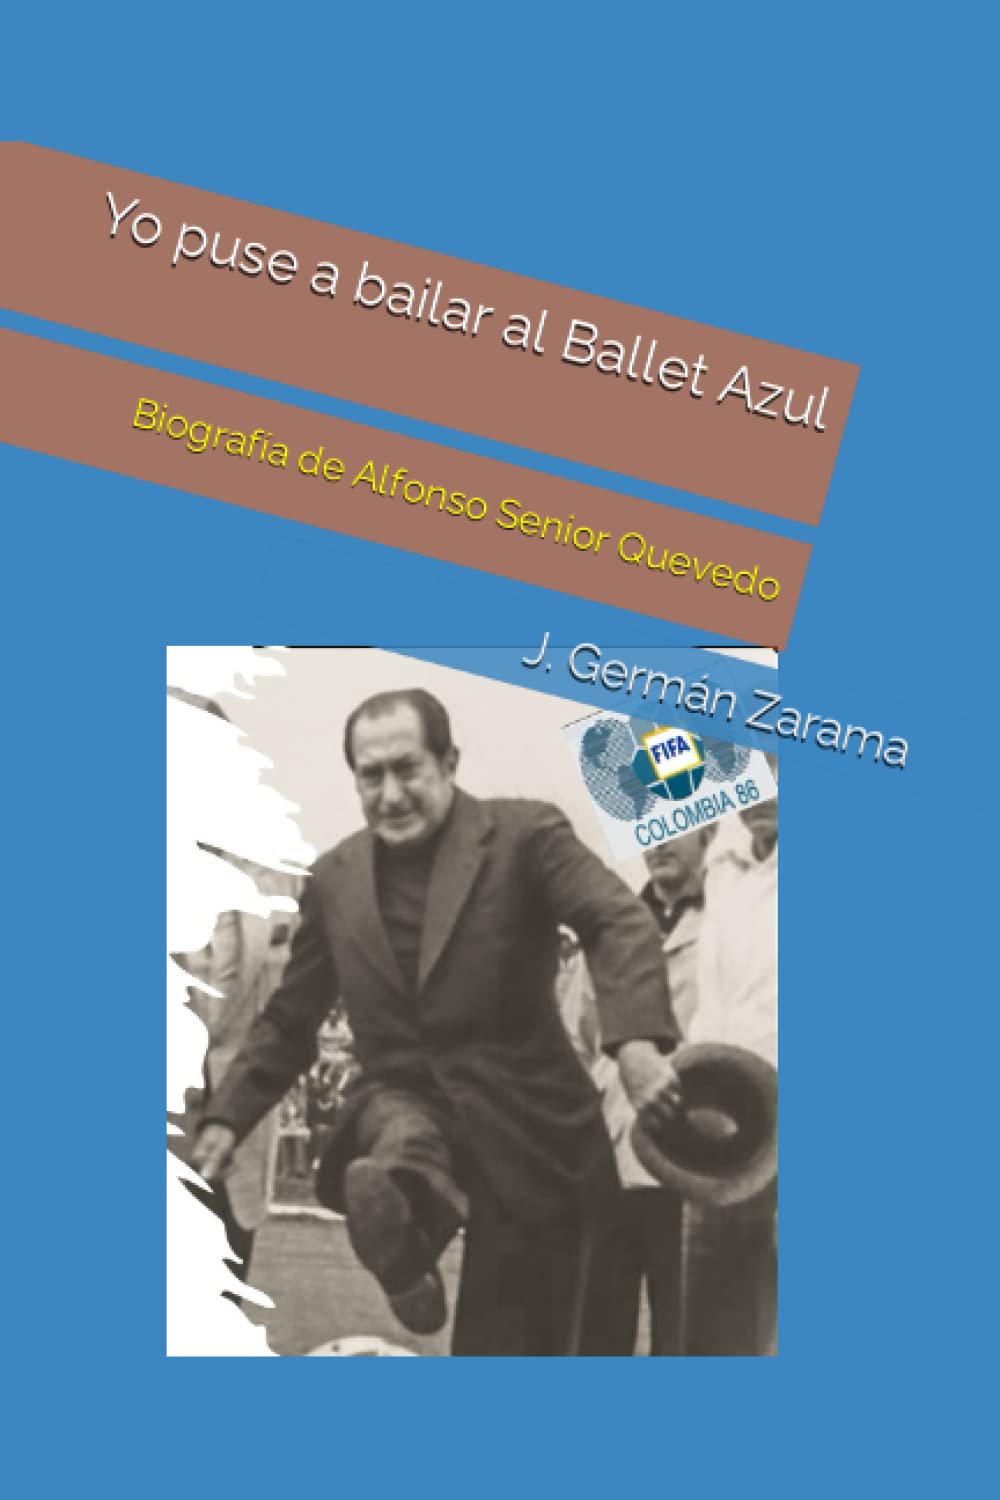 Libro: Yo puse a bailar al Ballet Azul: Biografía de Alfonso Senior Quevedo por José Germán Zarama